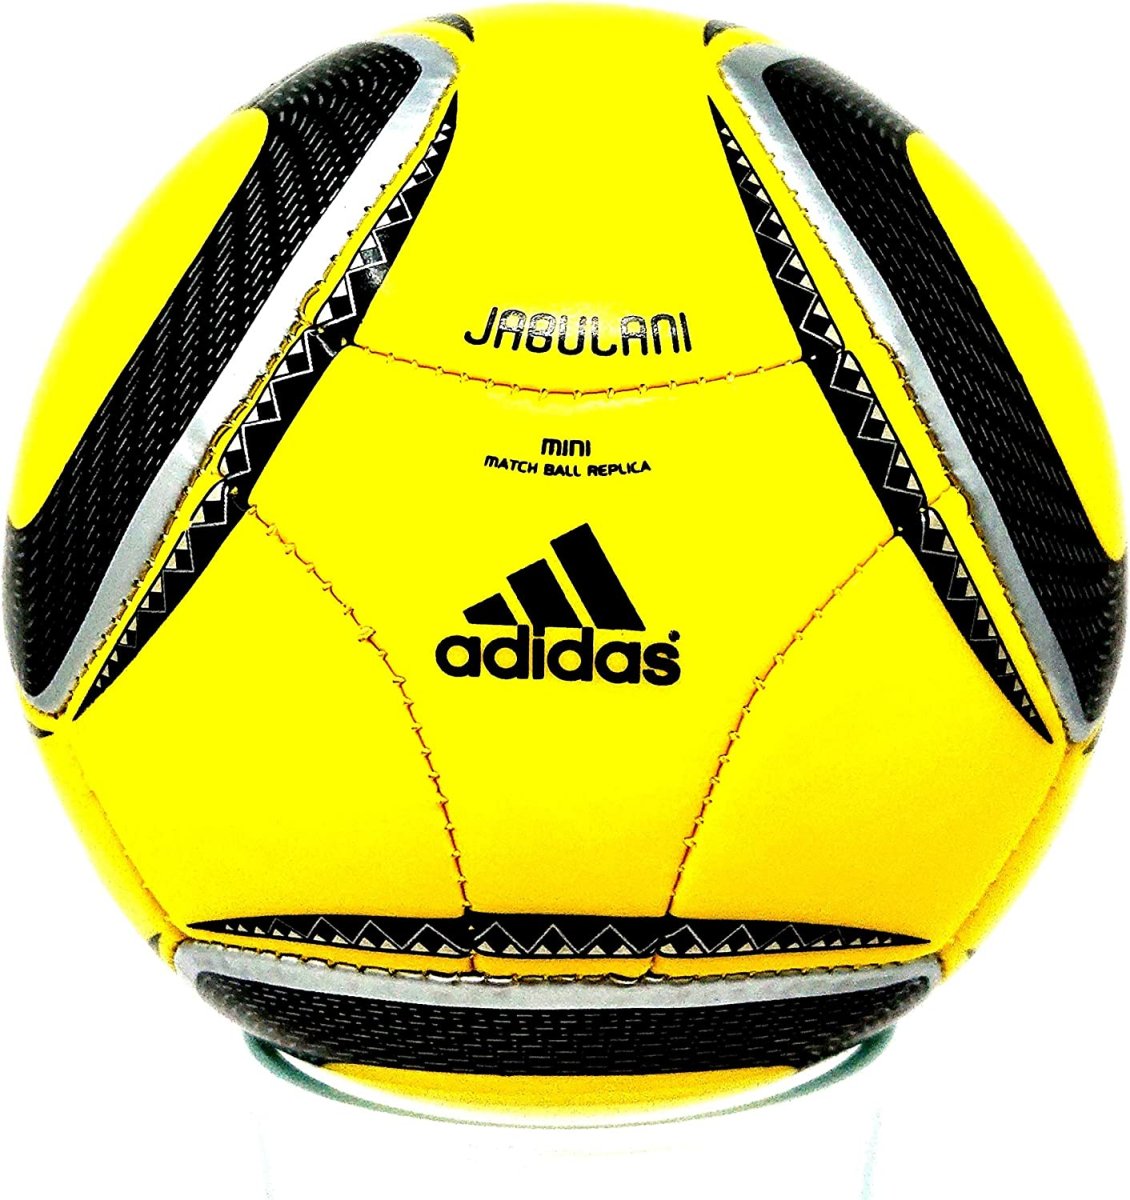 Adidas Jabulani Match Ball Replica